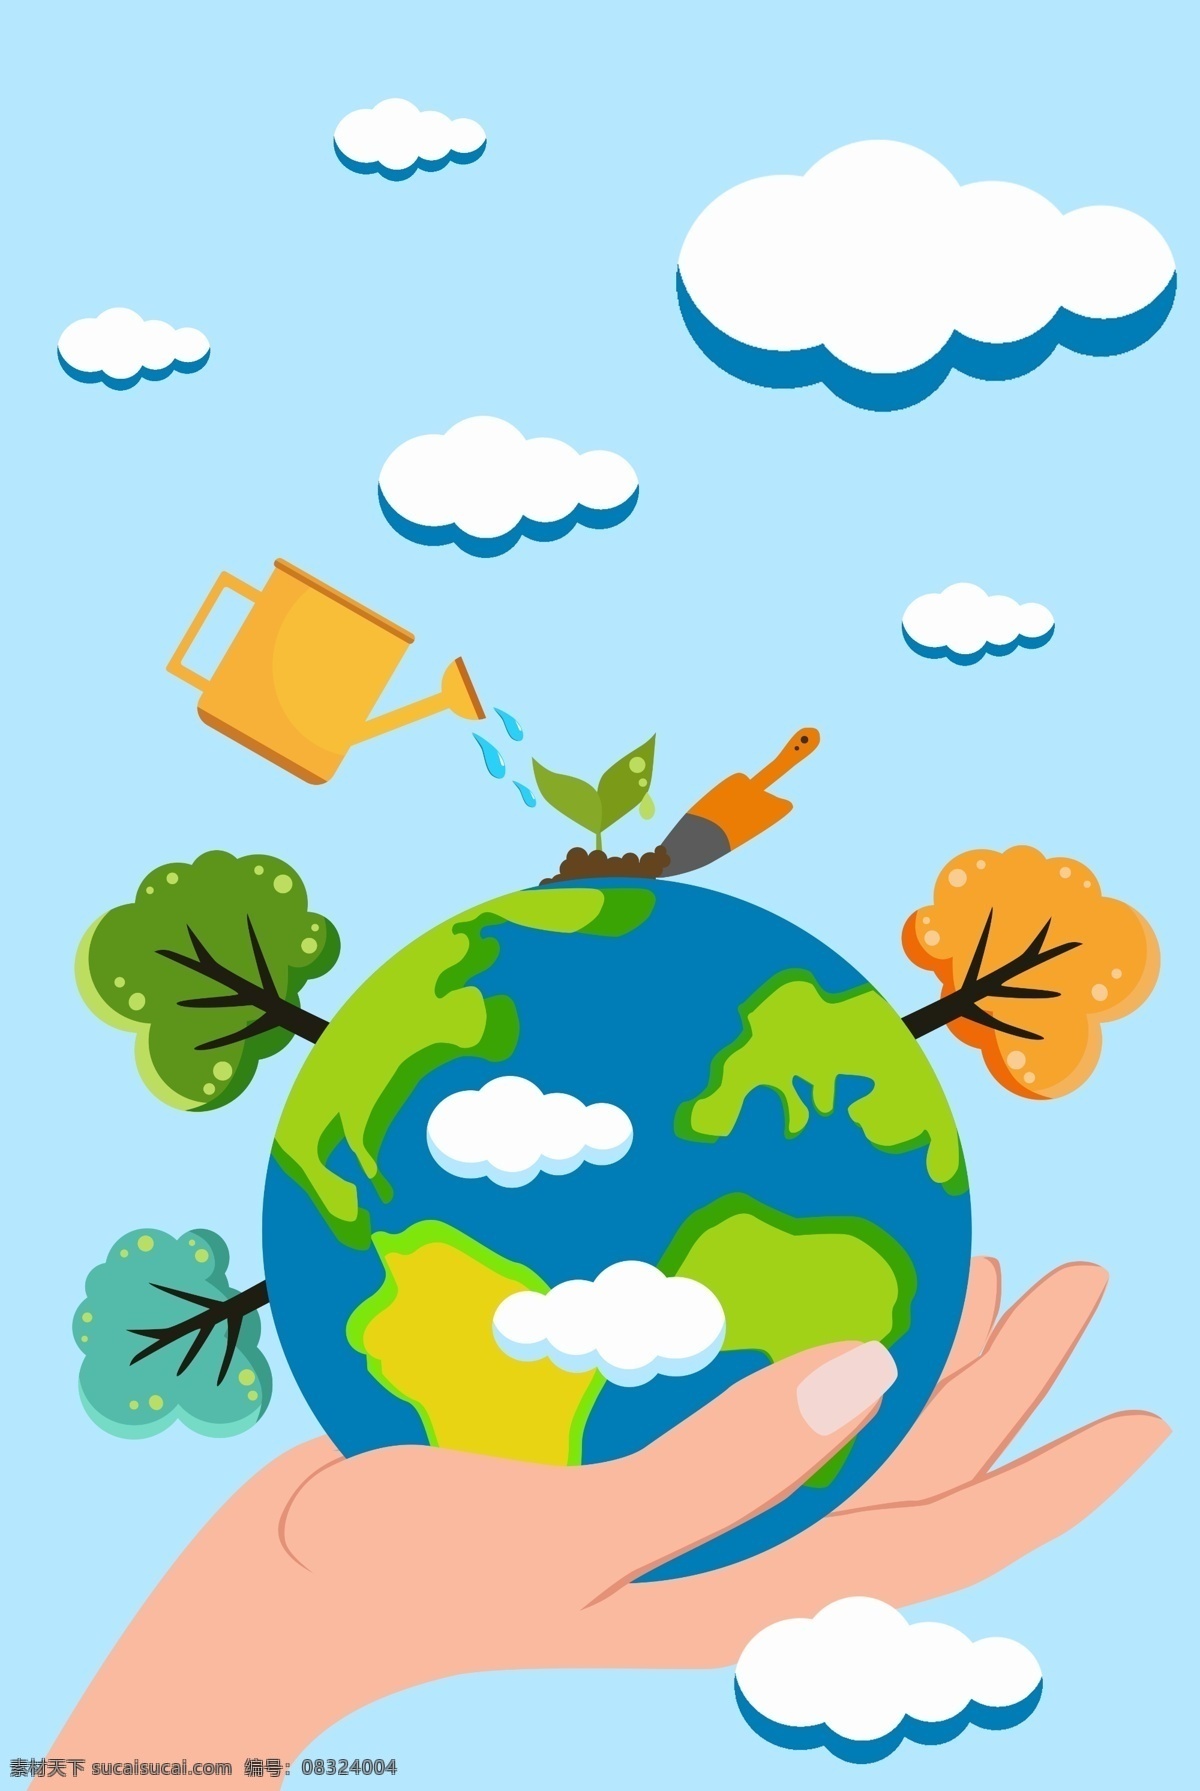 绿化 地球 植树节 海报 节日海报 环保 绿化环境 美化 爱护地球 绿色植物 双手 太阳 公益